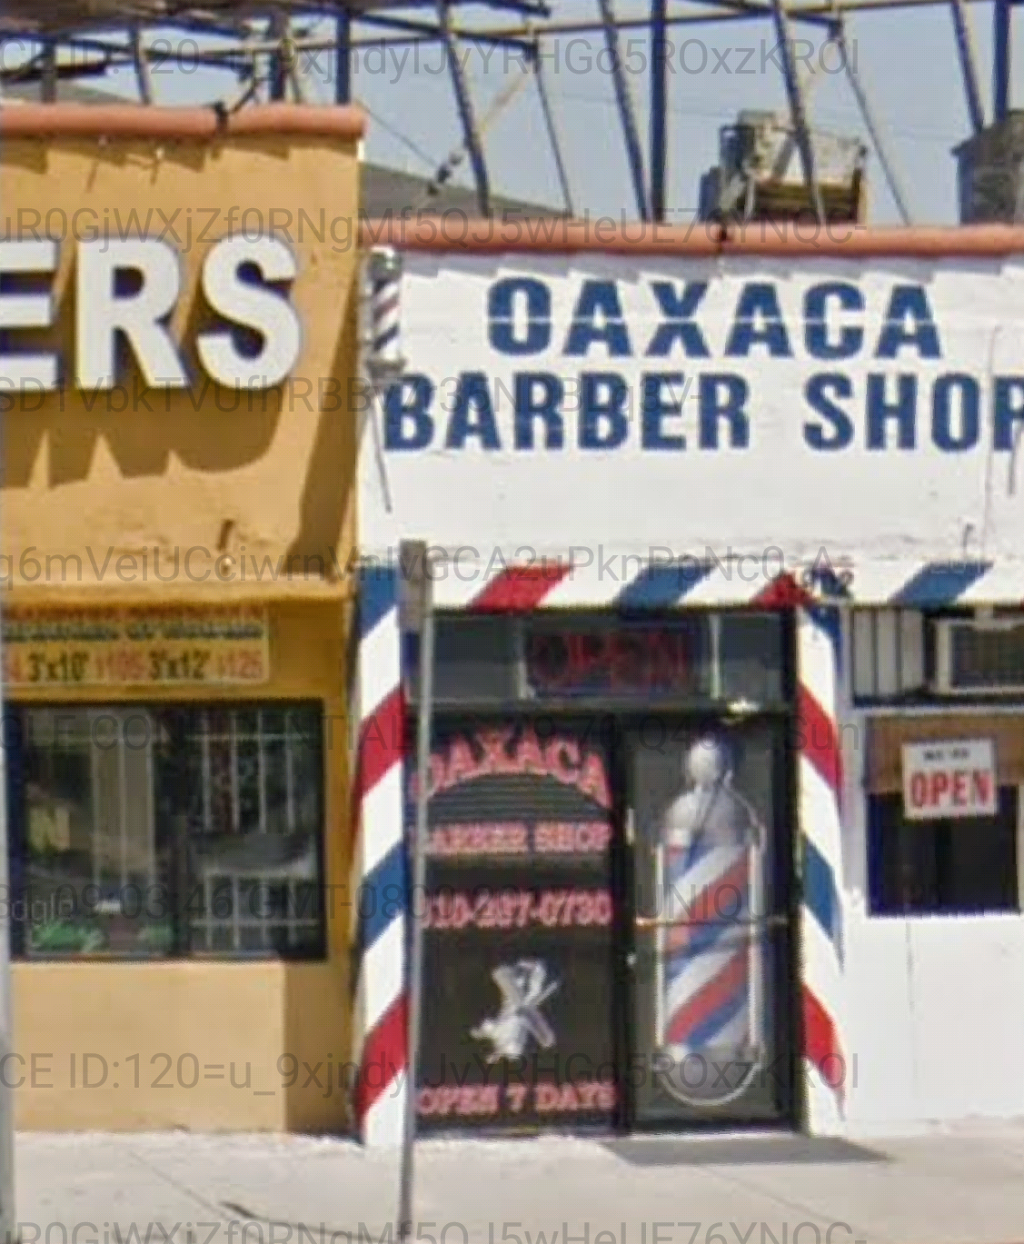 La Cienega Barbershop | 1902 S La Cienega Blvd, Los Angeles, CA 90034, USA | Phone: (310) 287-0730